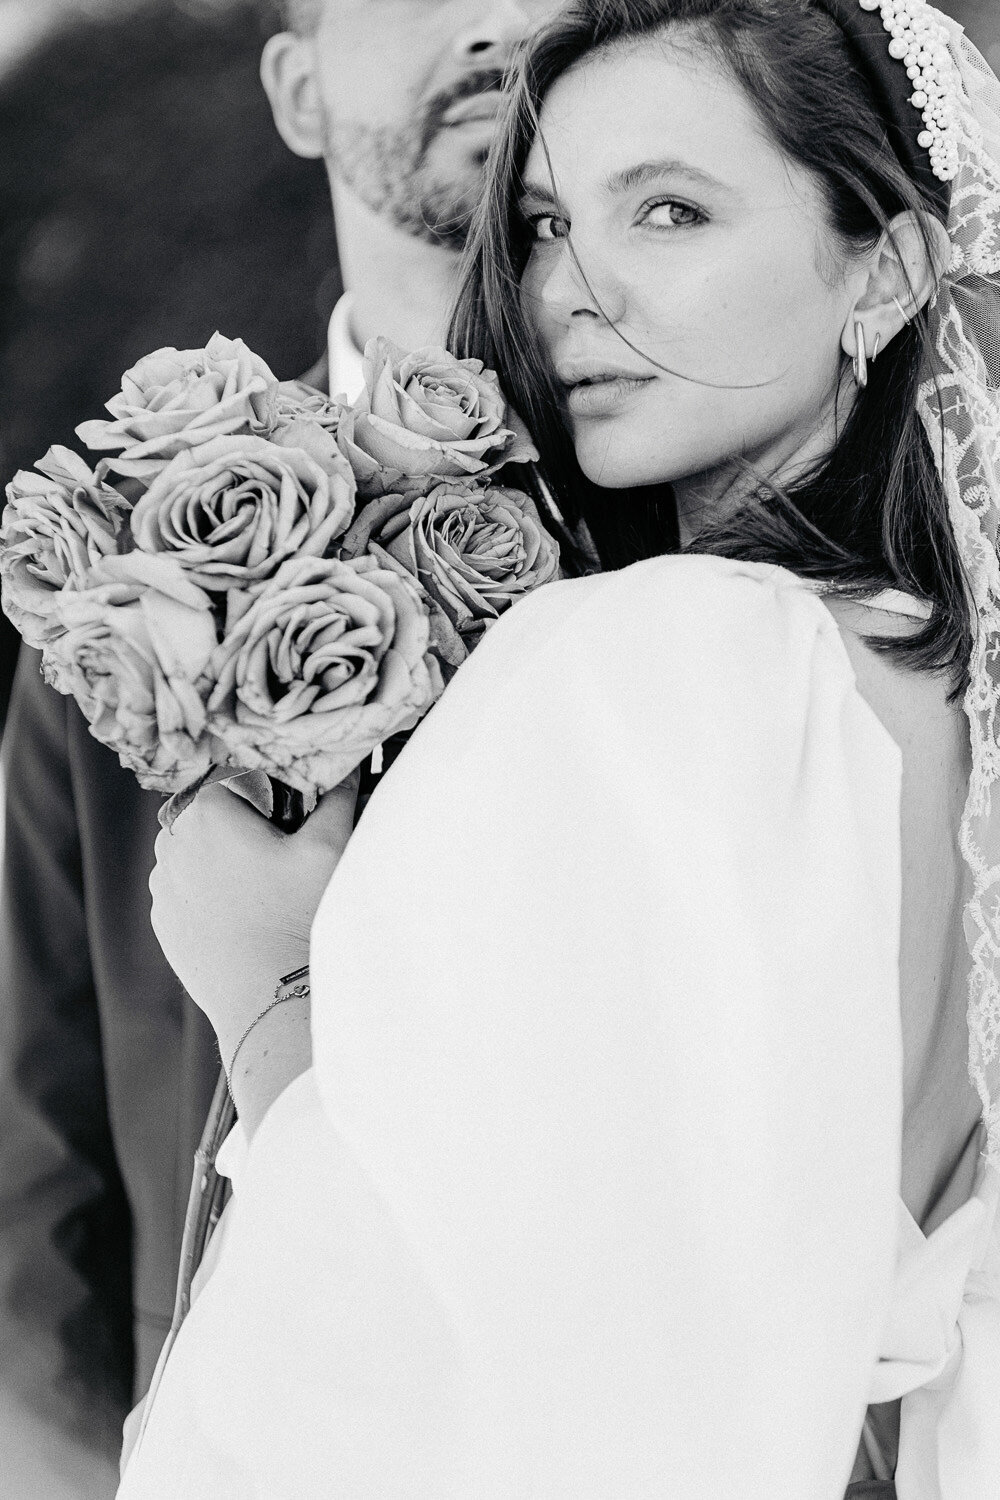 Genieße den zauberhaften Moment, in dem die Braut mit ihrem eleganten weißen Rosenstrauß und der Bräutigam in liebevoller Nähe am idyllischen Schloss Benrath verweilen. Tauche ein in die Romantik und Eleganz dieser feinen Kunst-Hochzeitsfotografie.